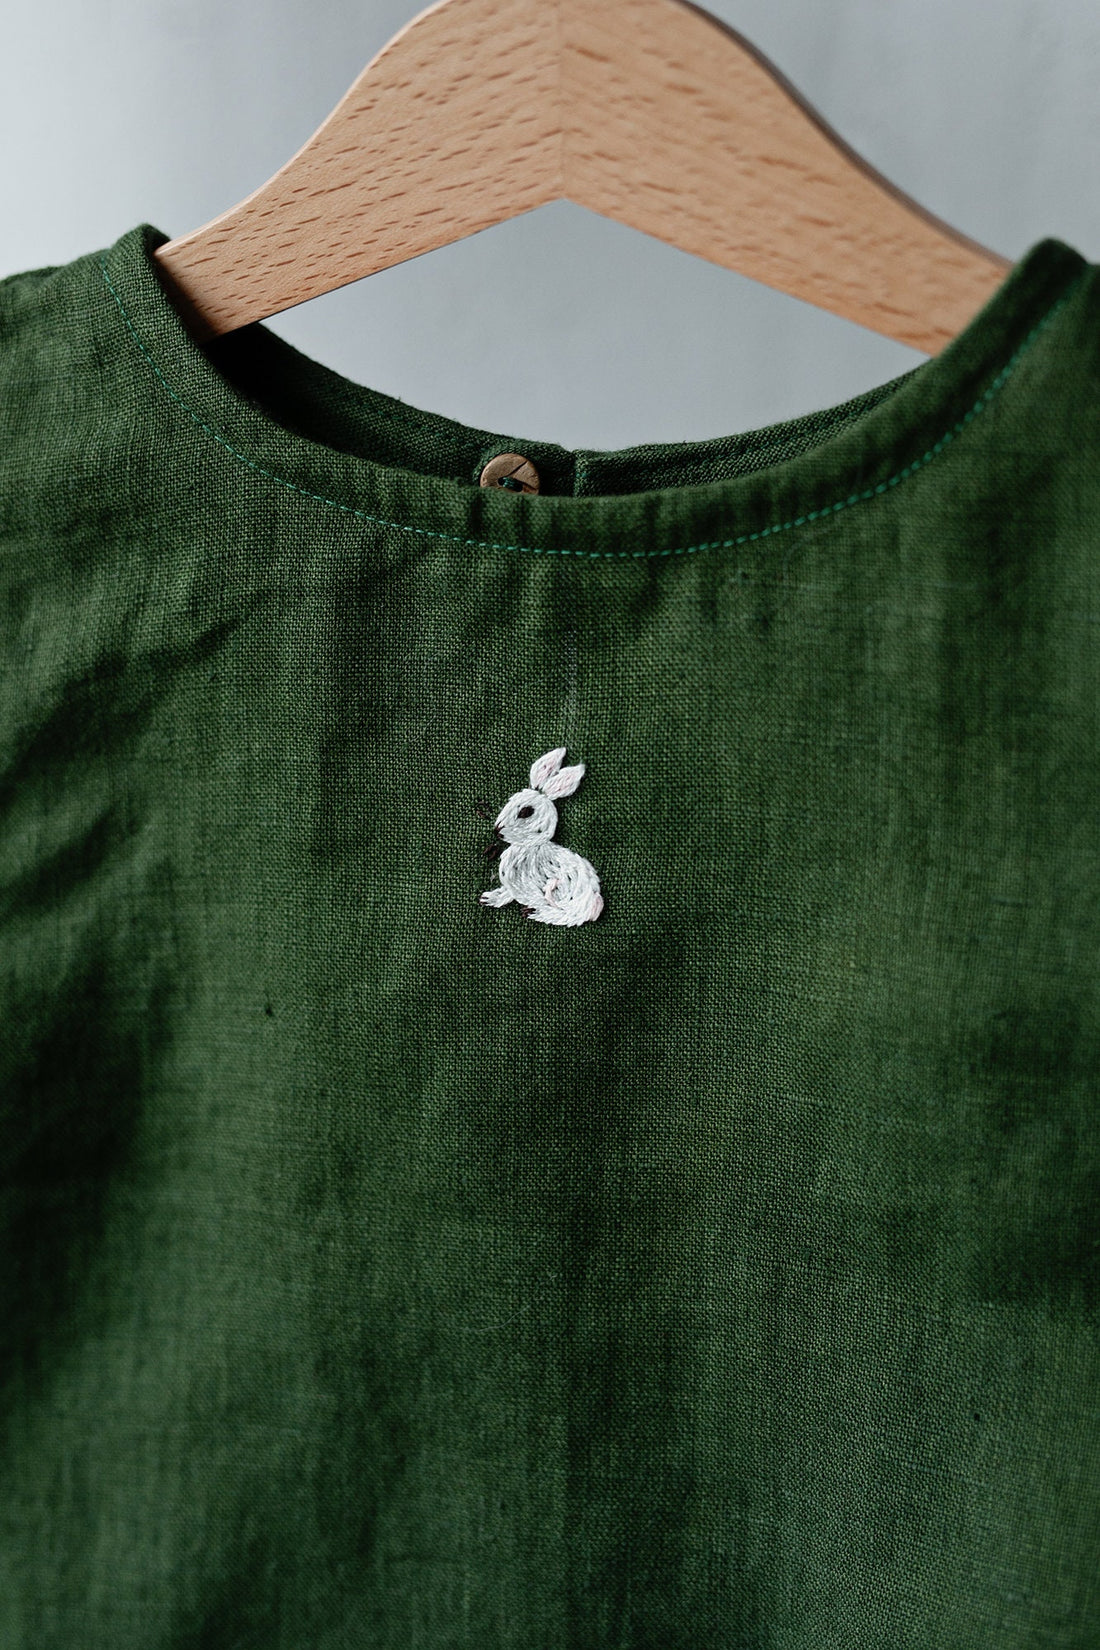 Forest Green Sleeveless Shirt